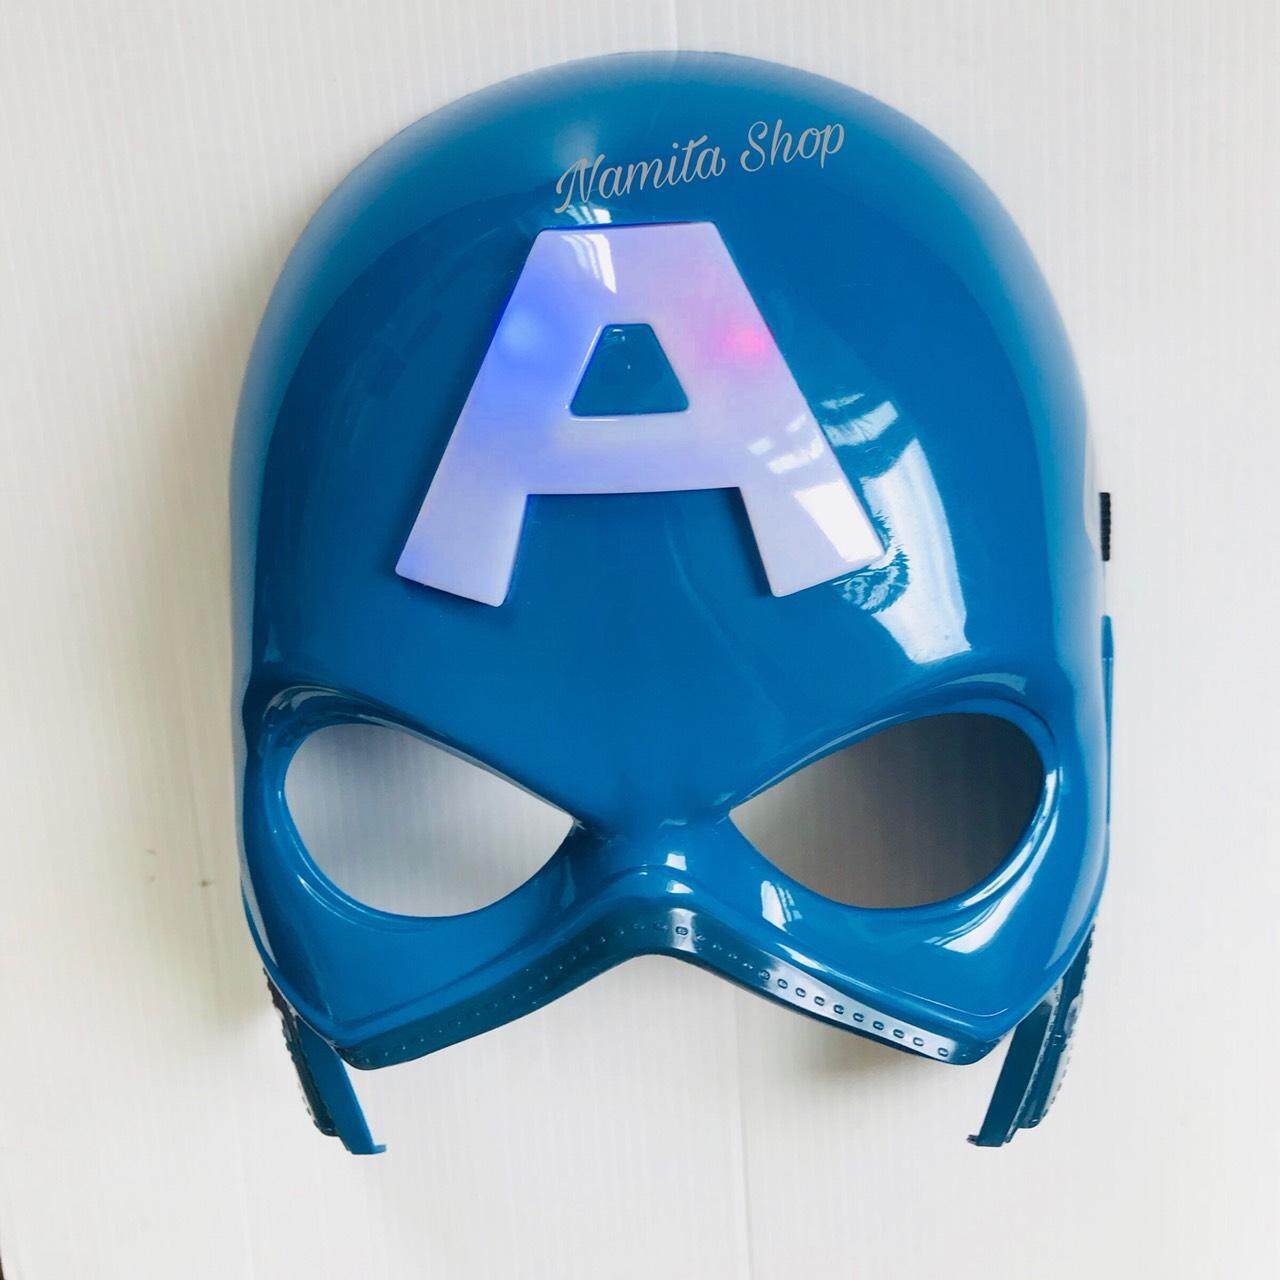 CAP TAIN AMERICA Mask  หน้ากากกัปตัน อเมริกา ดิอเวน เจอร์ รุ่นมีไฟ The Aven gers หน้ากากของเล่นเด็ก มีสายรัดยางยืดที่ด้านหลัง น้ำหนักเบาสวมใส่สบาย